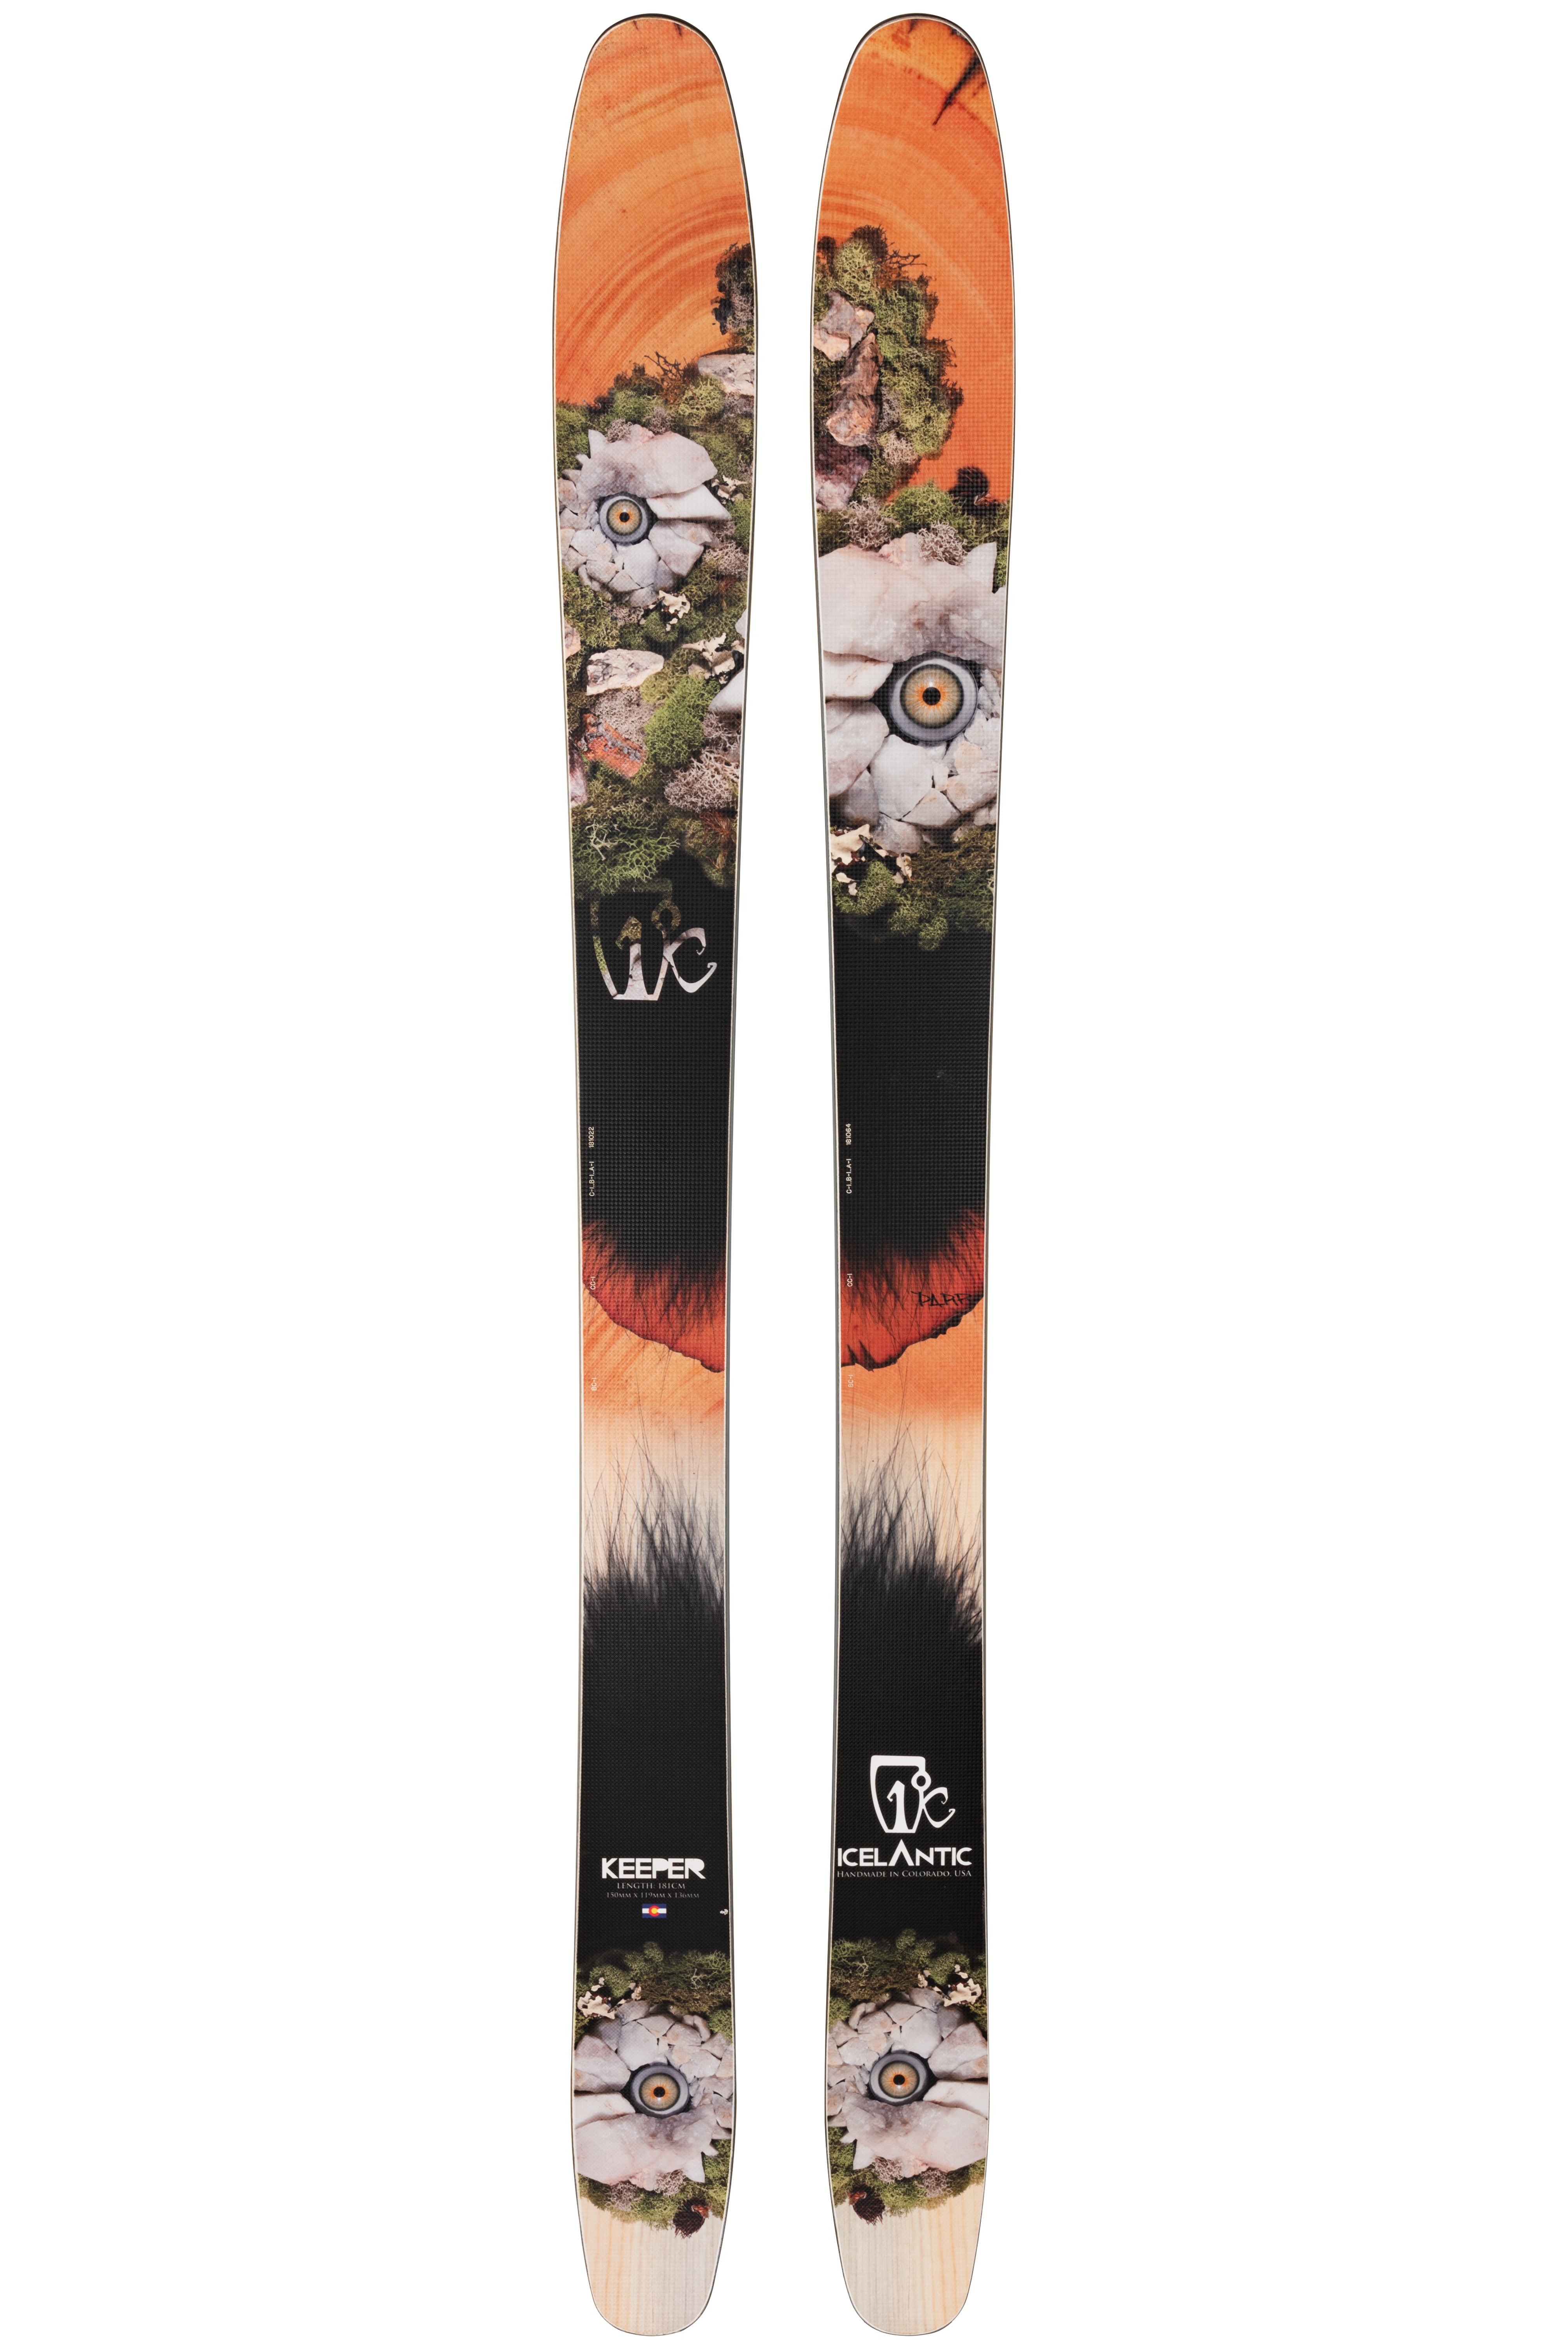 Лыжи с камбером Icelantic Keeper 119 2013/2014 181cm